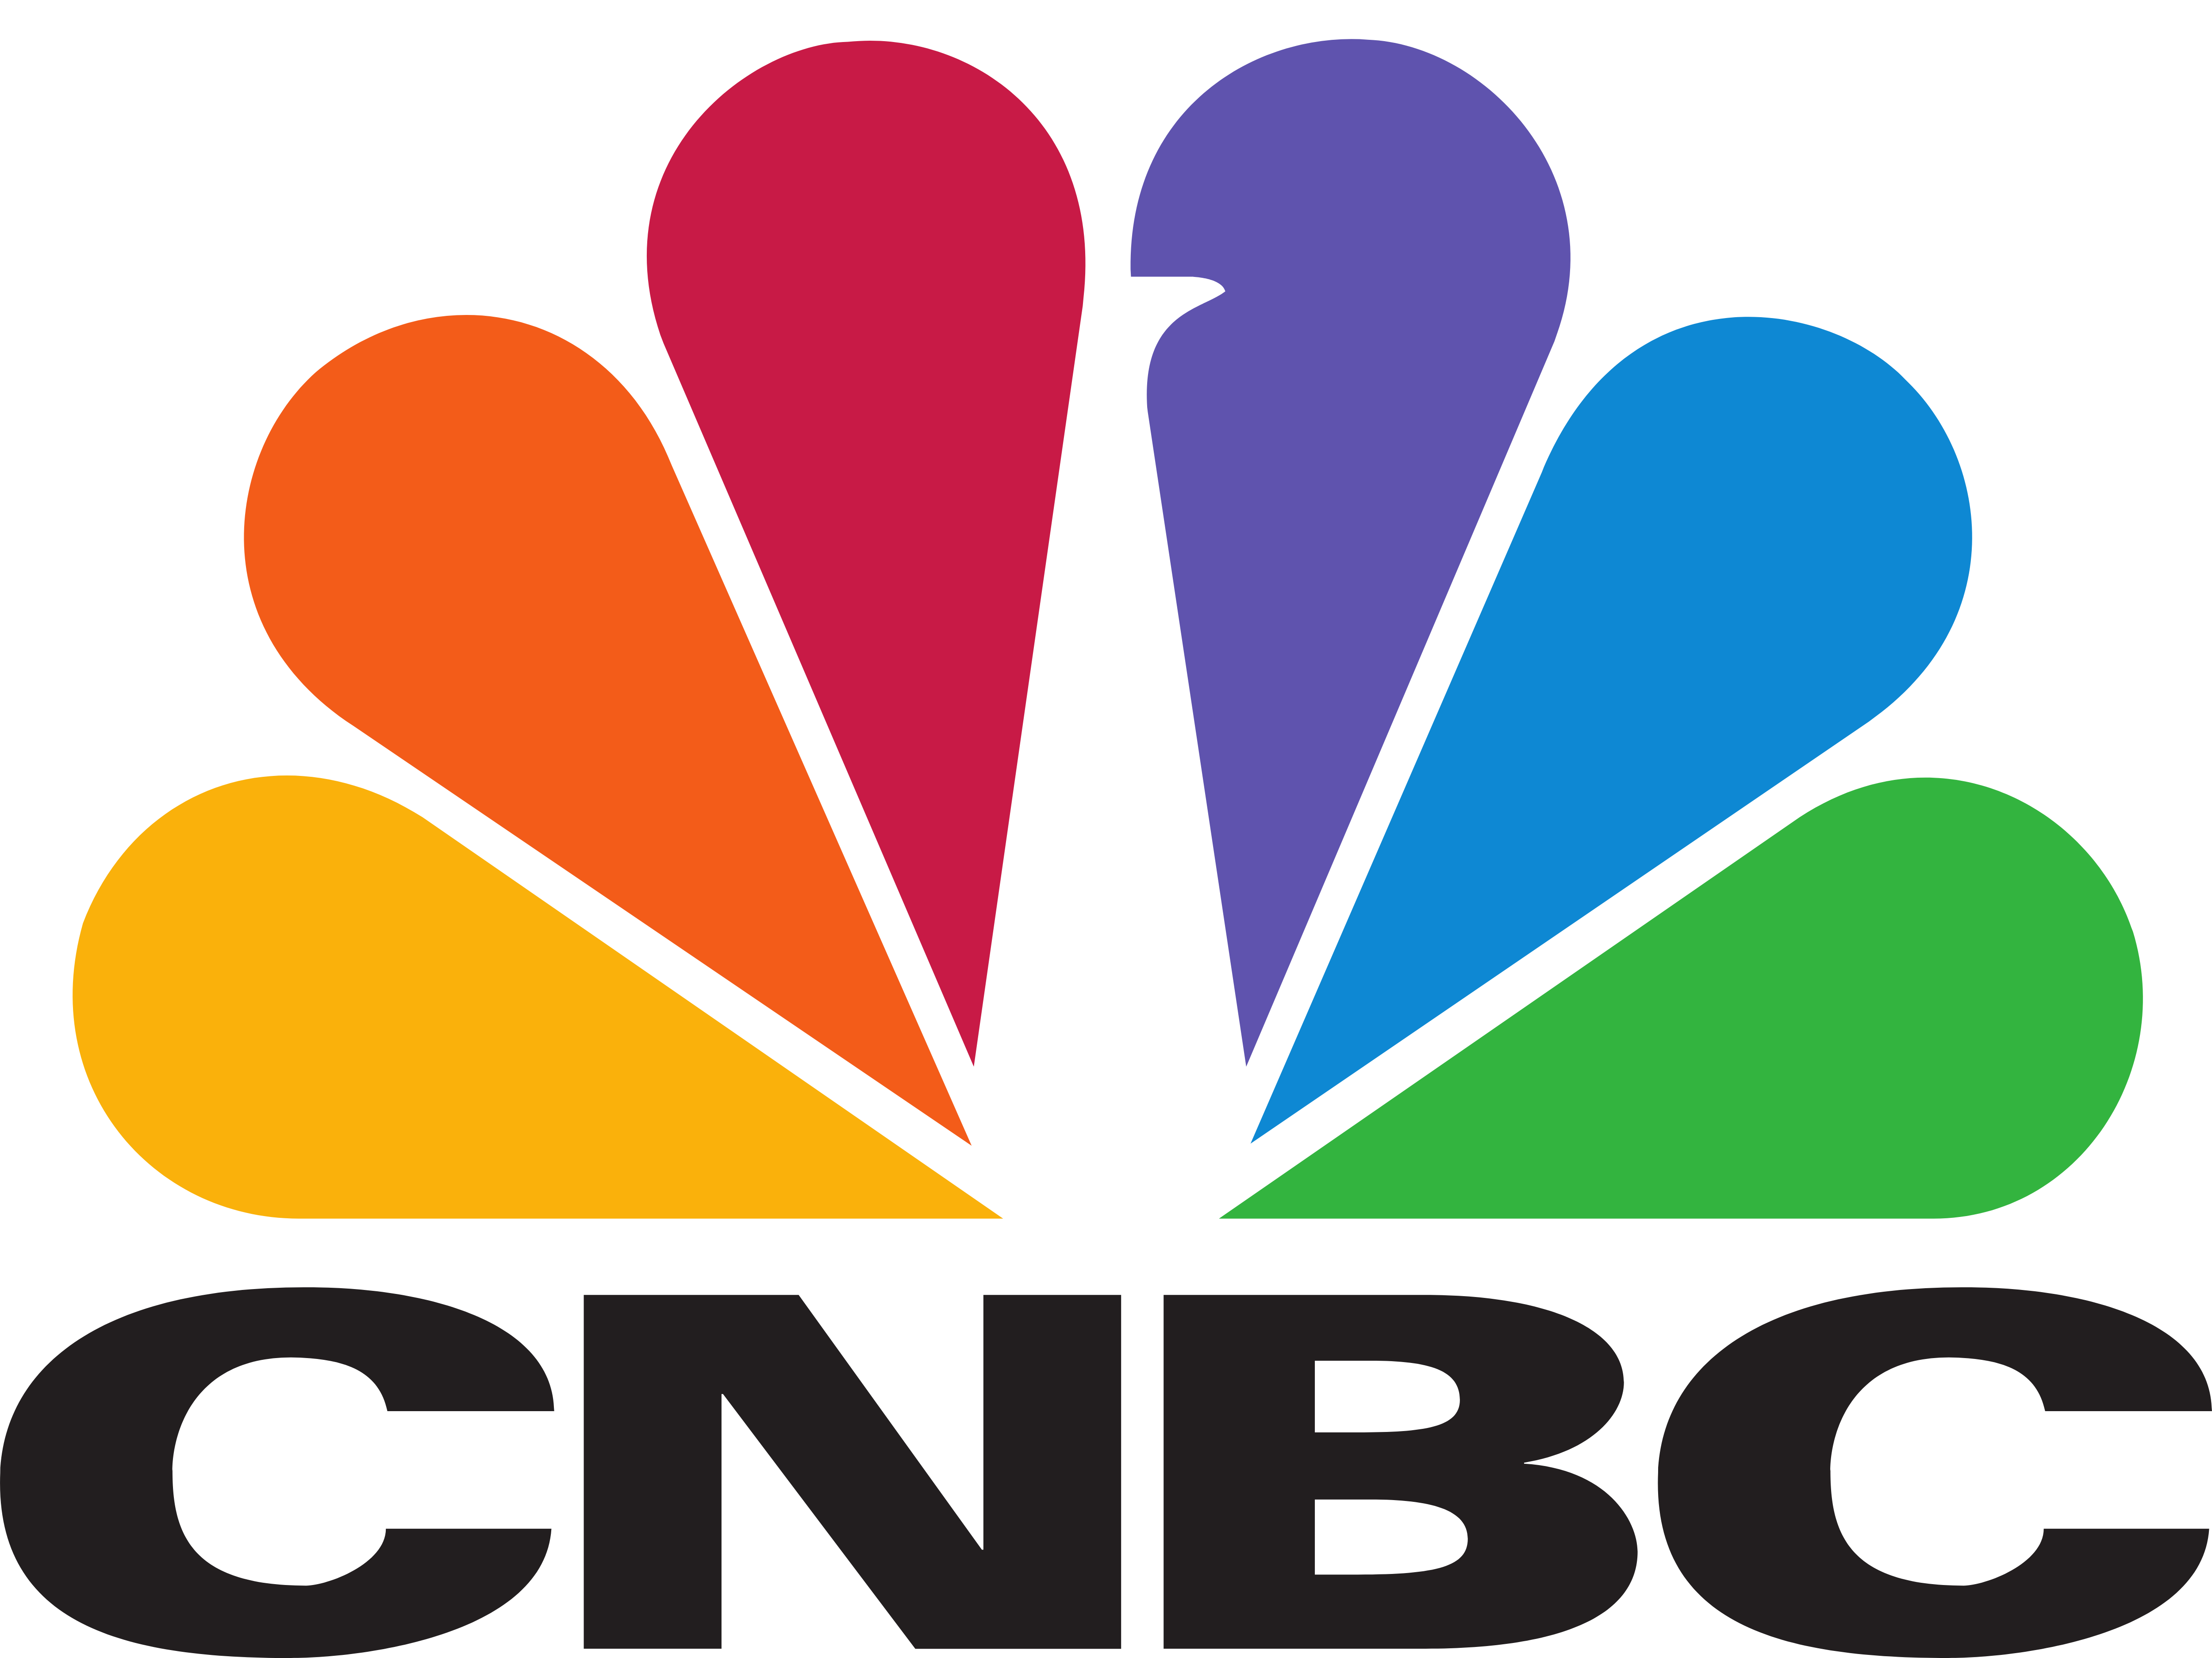 CNBC – ロゴのダウンロード